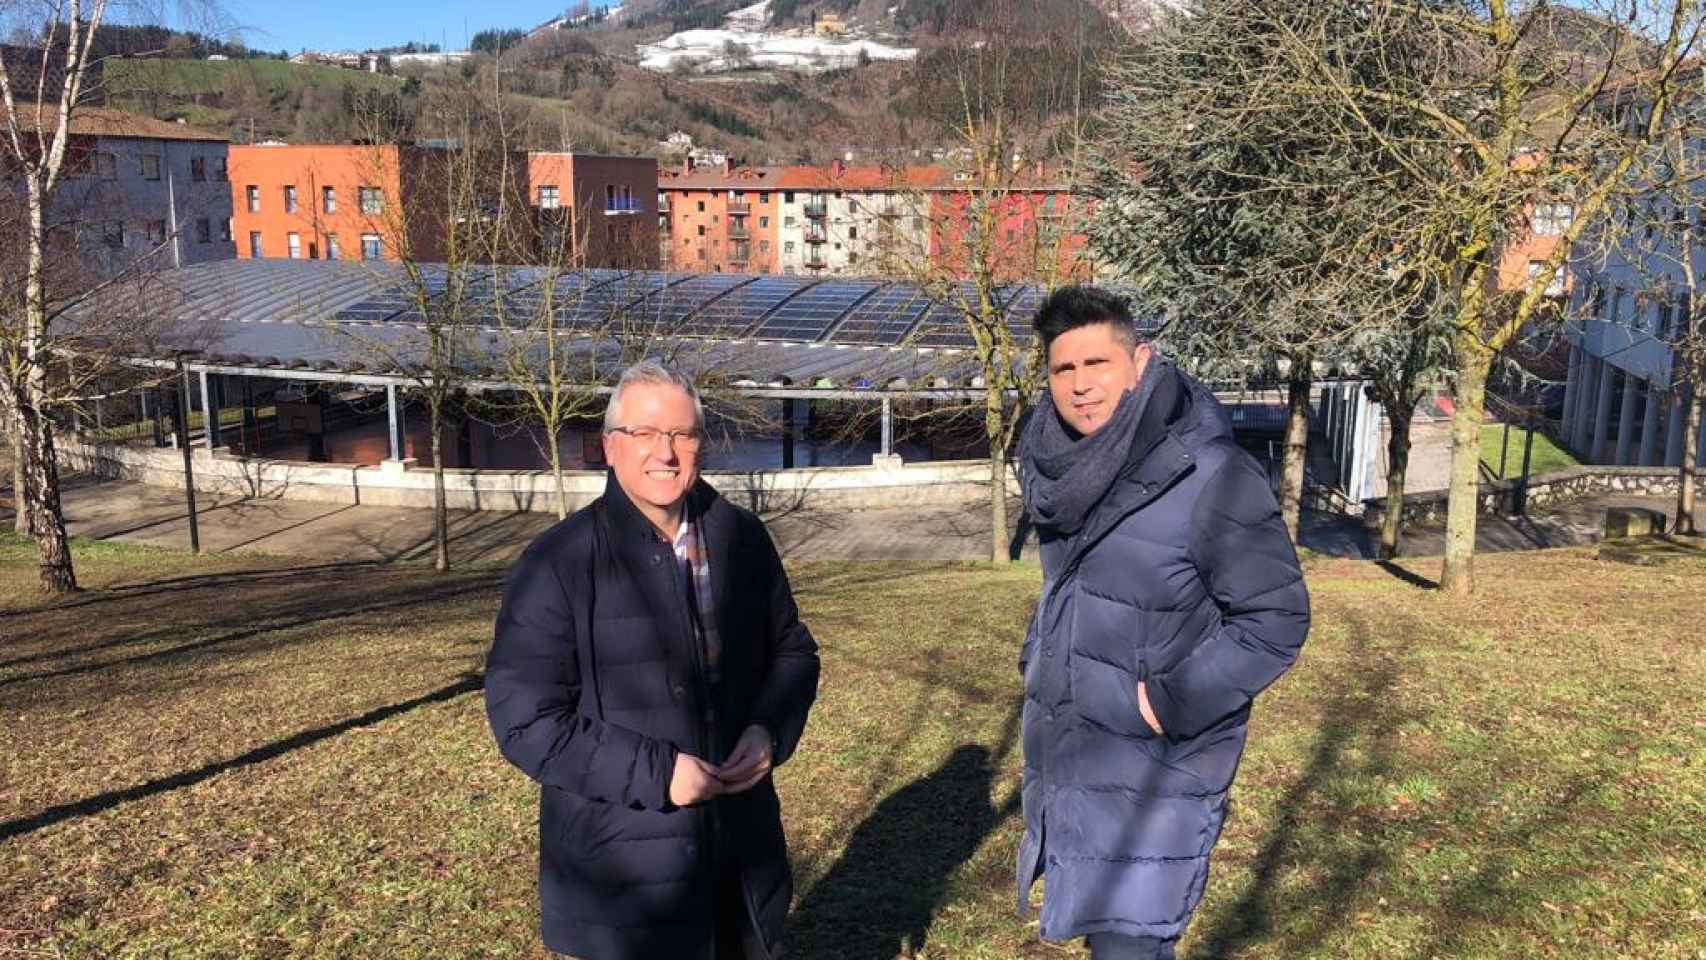 El diputado de Medio Ambiente de Gipuzkoa, José Ignacio Asensio, y el alcalde de Zumarraga, Mikel Serrano, delante de una de las instalaciones de placas solares de la TEK de Zumarraga.